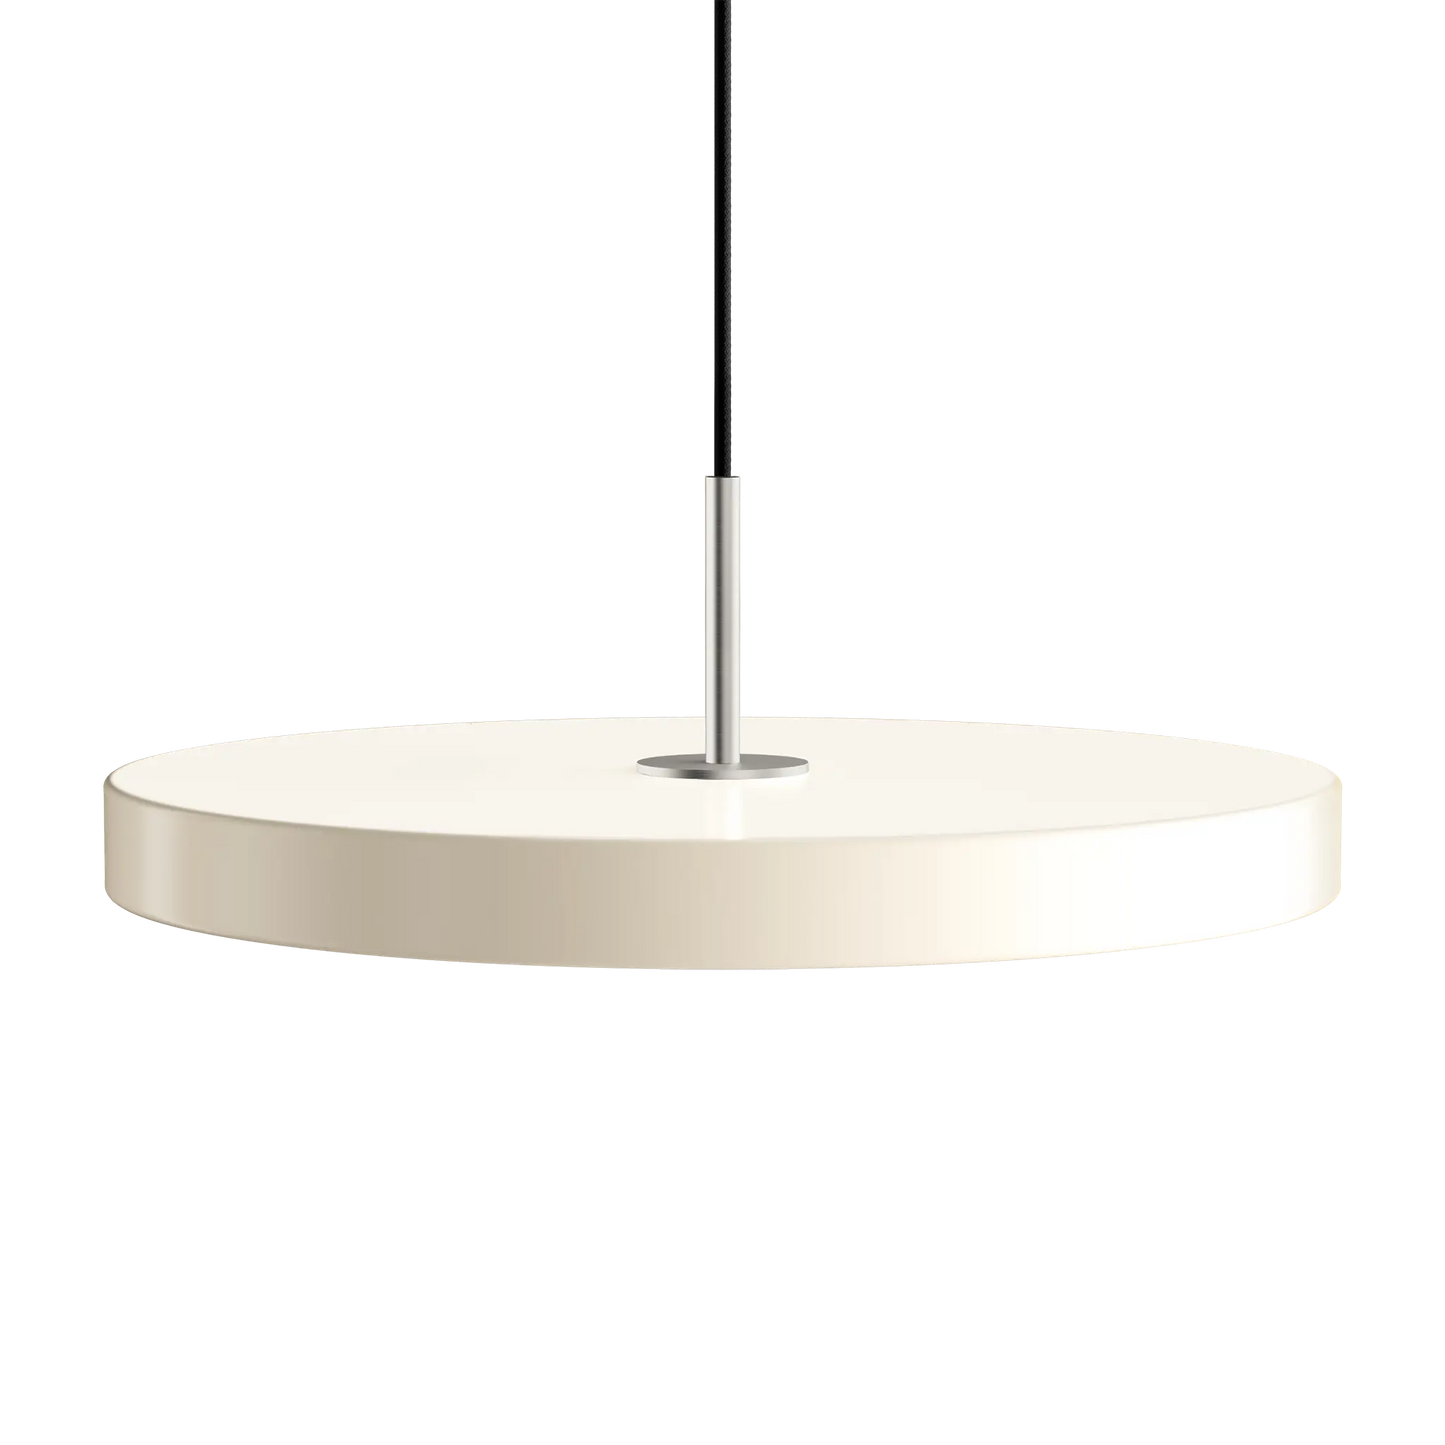 Asteria Medium taklampa med ståltop i färgen Pearl White från Umage